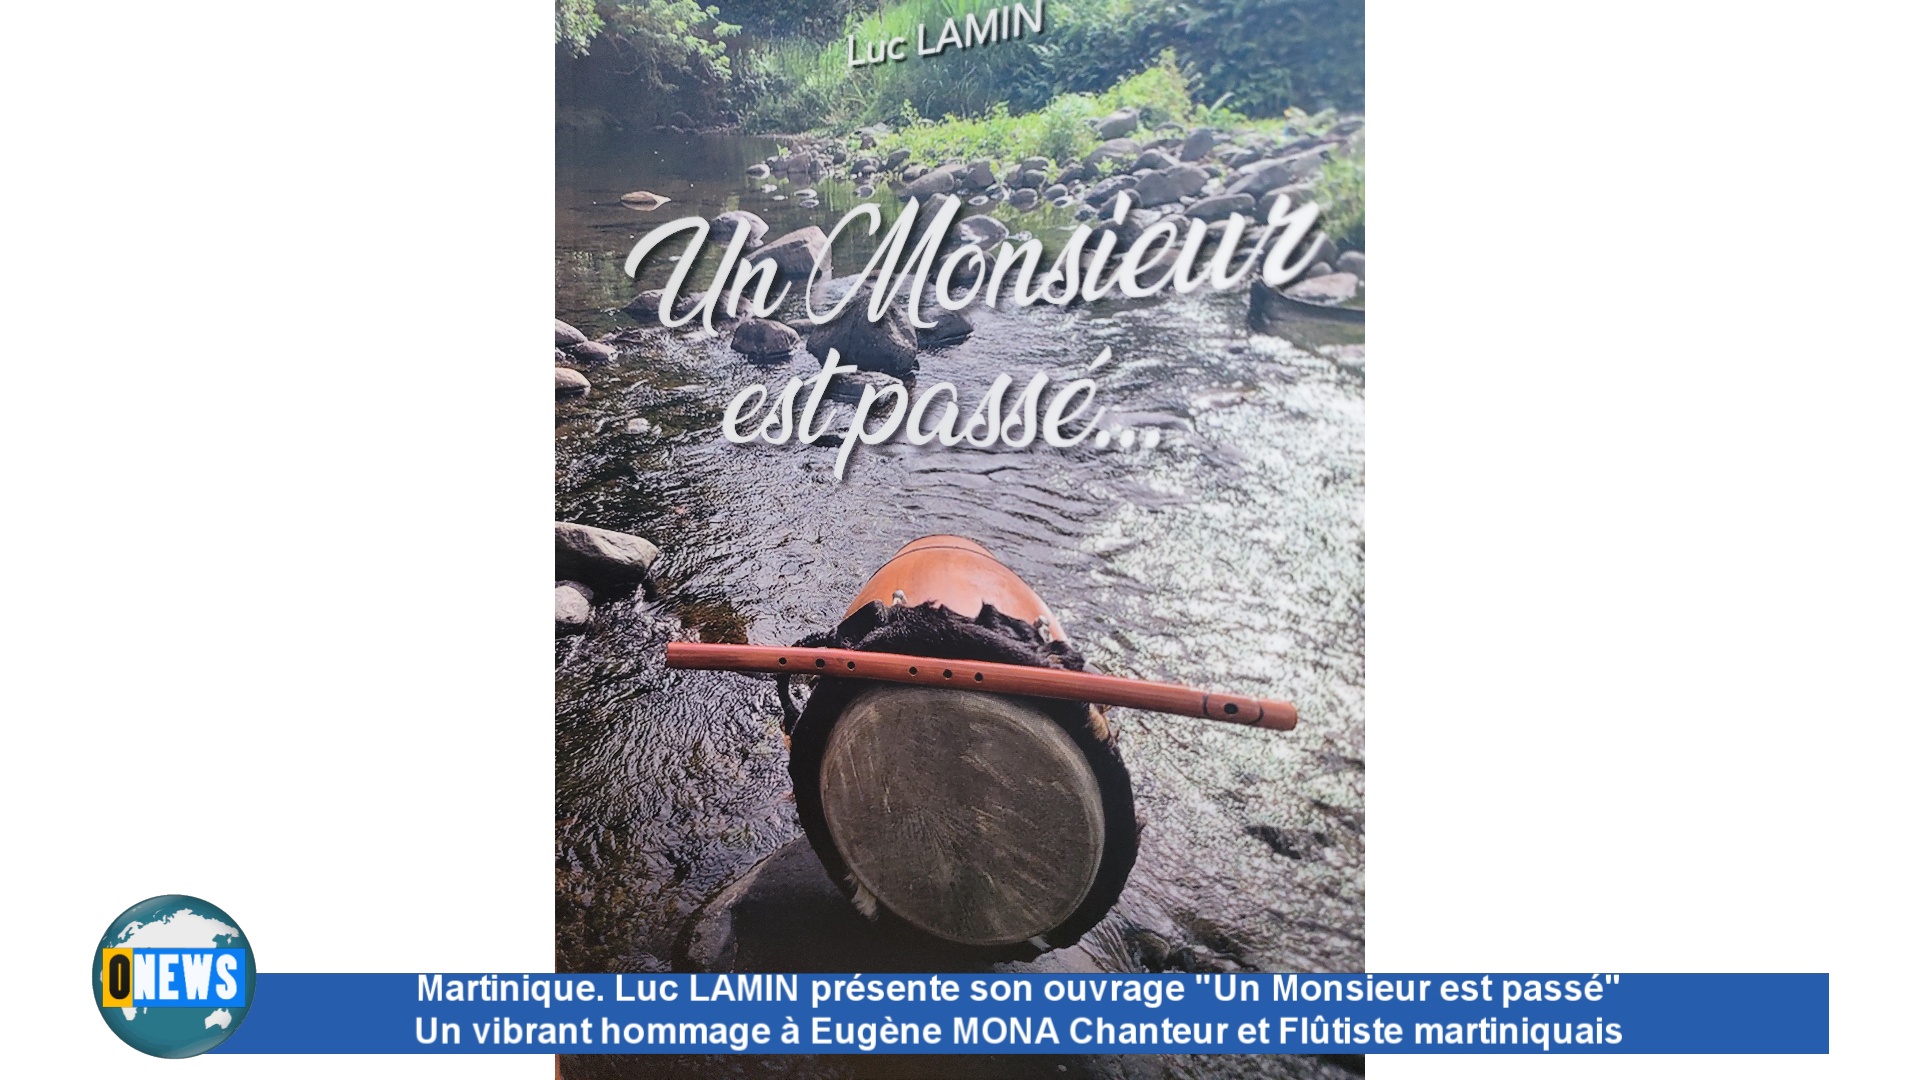 [Vidéo] Martinique. Luc LAMIN présente son dernier ouvrage ‘Un Monsieur est passé’ en hommage à Eugène MONA